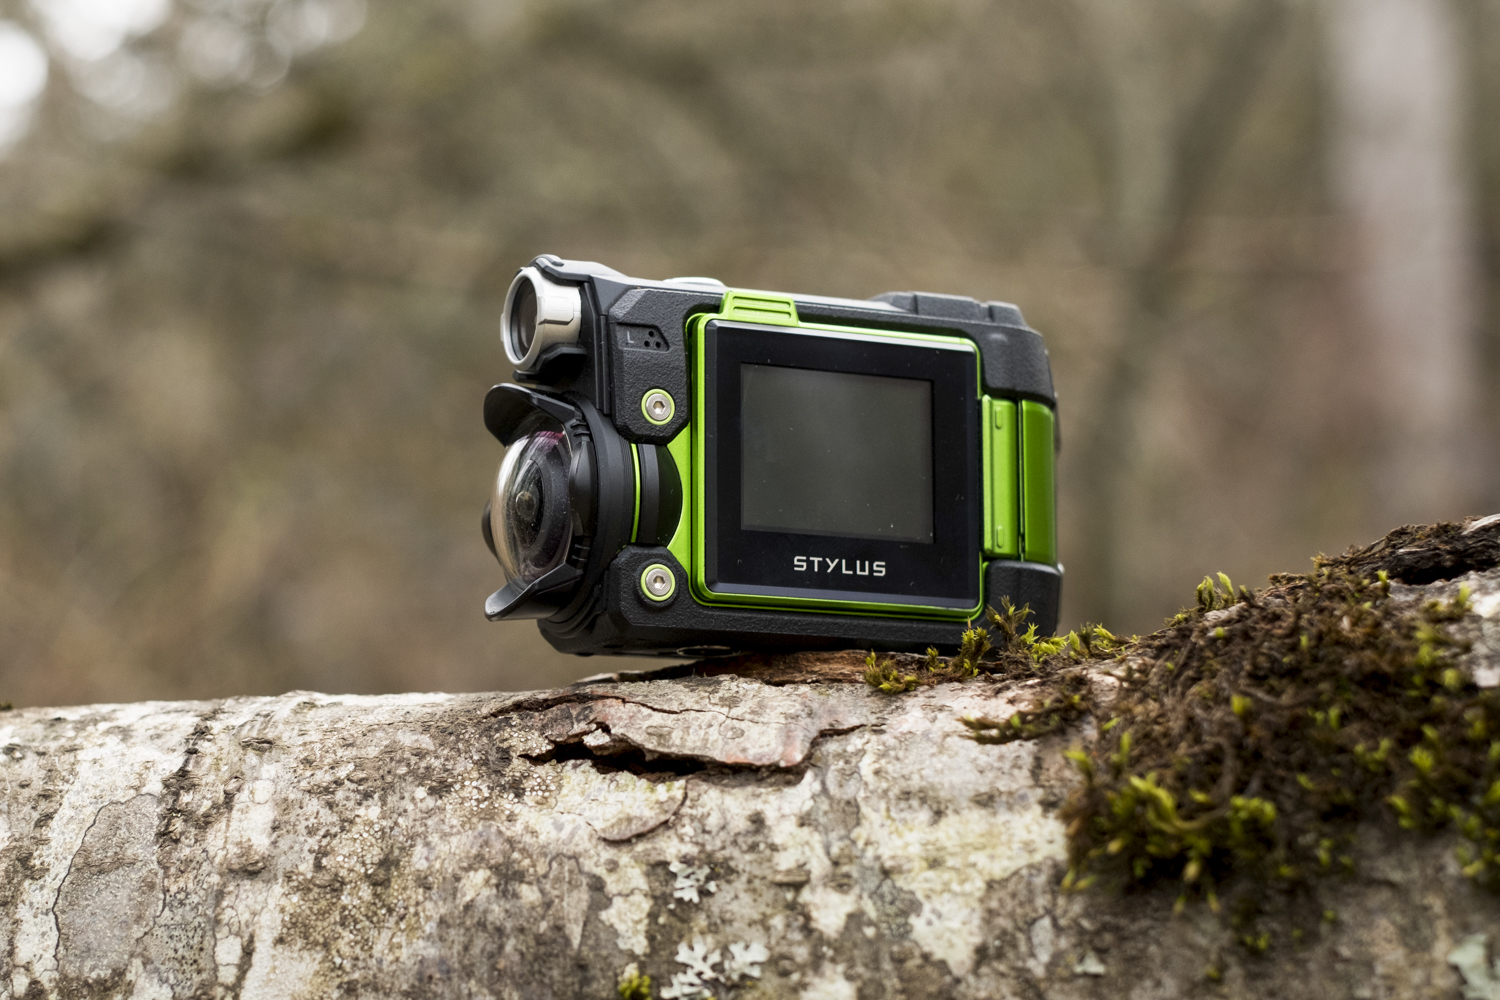 La nouvelle caméra sport 4K Tough TG-Tracker d'Olympus